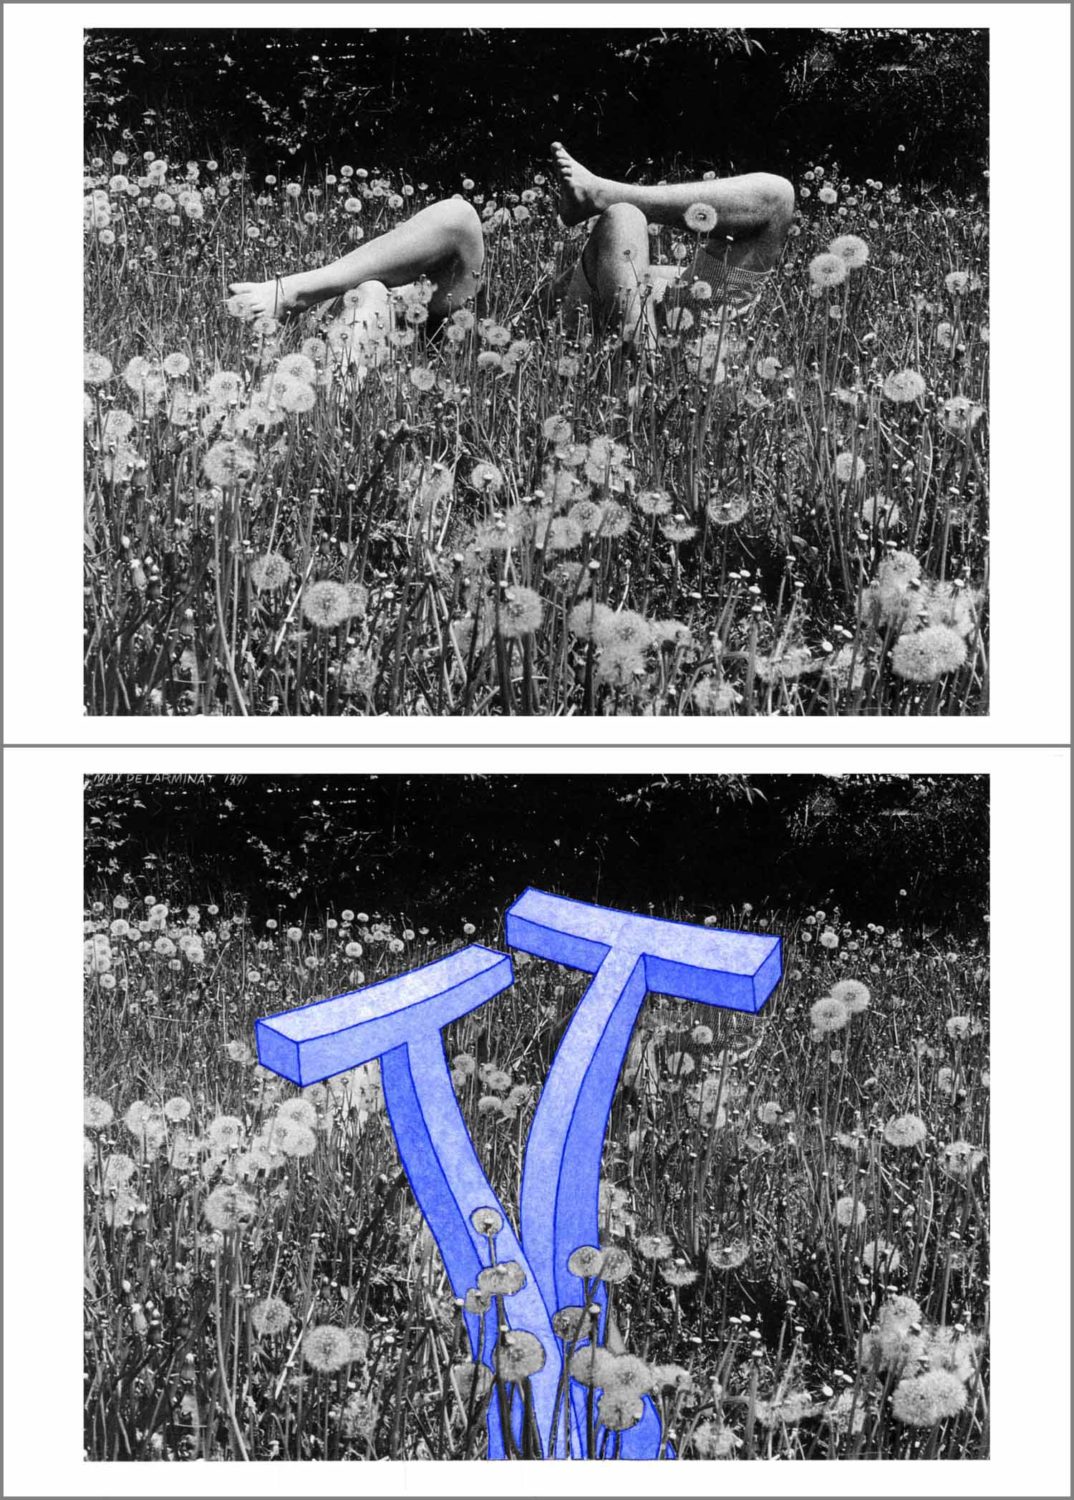 Flirter. (fleurs-T). Un rébus réalisé par Max de Larminat à partir d’une carte postale détournée représentant initialement deux paires jambes nues surgissant d’un lit de fleurs qui cache leurs propriétaires couchés dans ce champs de fleurs. Pour les besoins de ce rébus, j’ai fait surgir à la place de ces jambes deux “T“ fort érectiles et ondulants, étroitement collés l’un à l’autre.